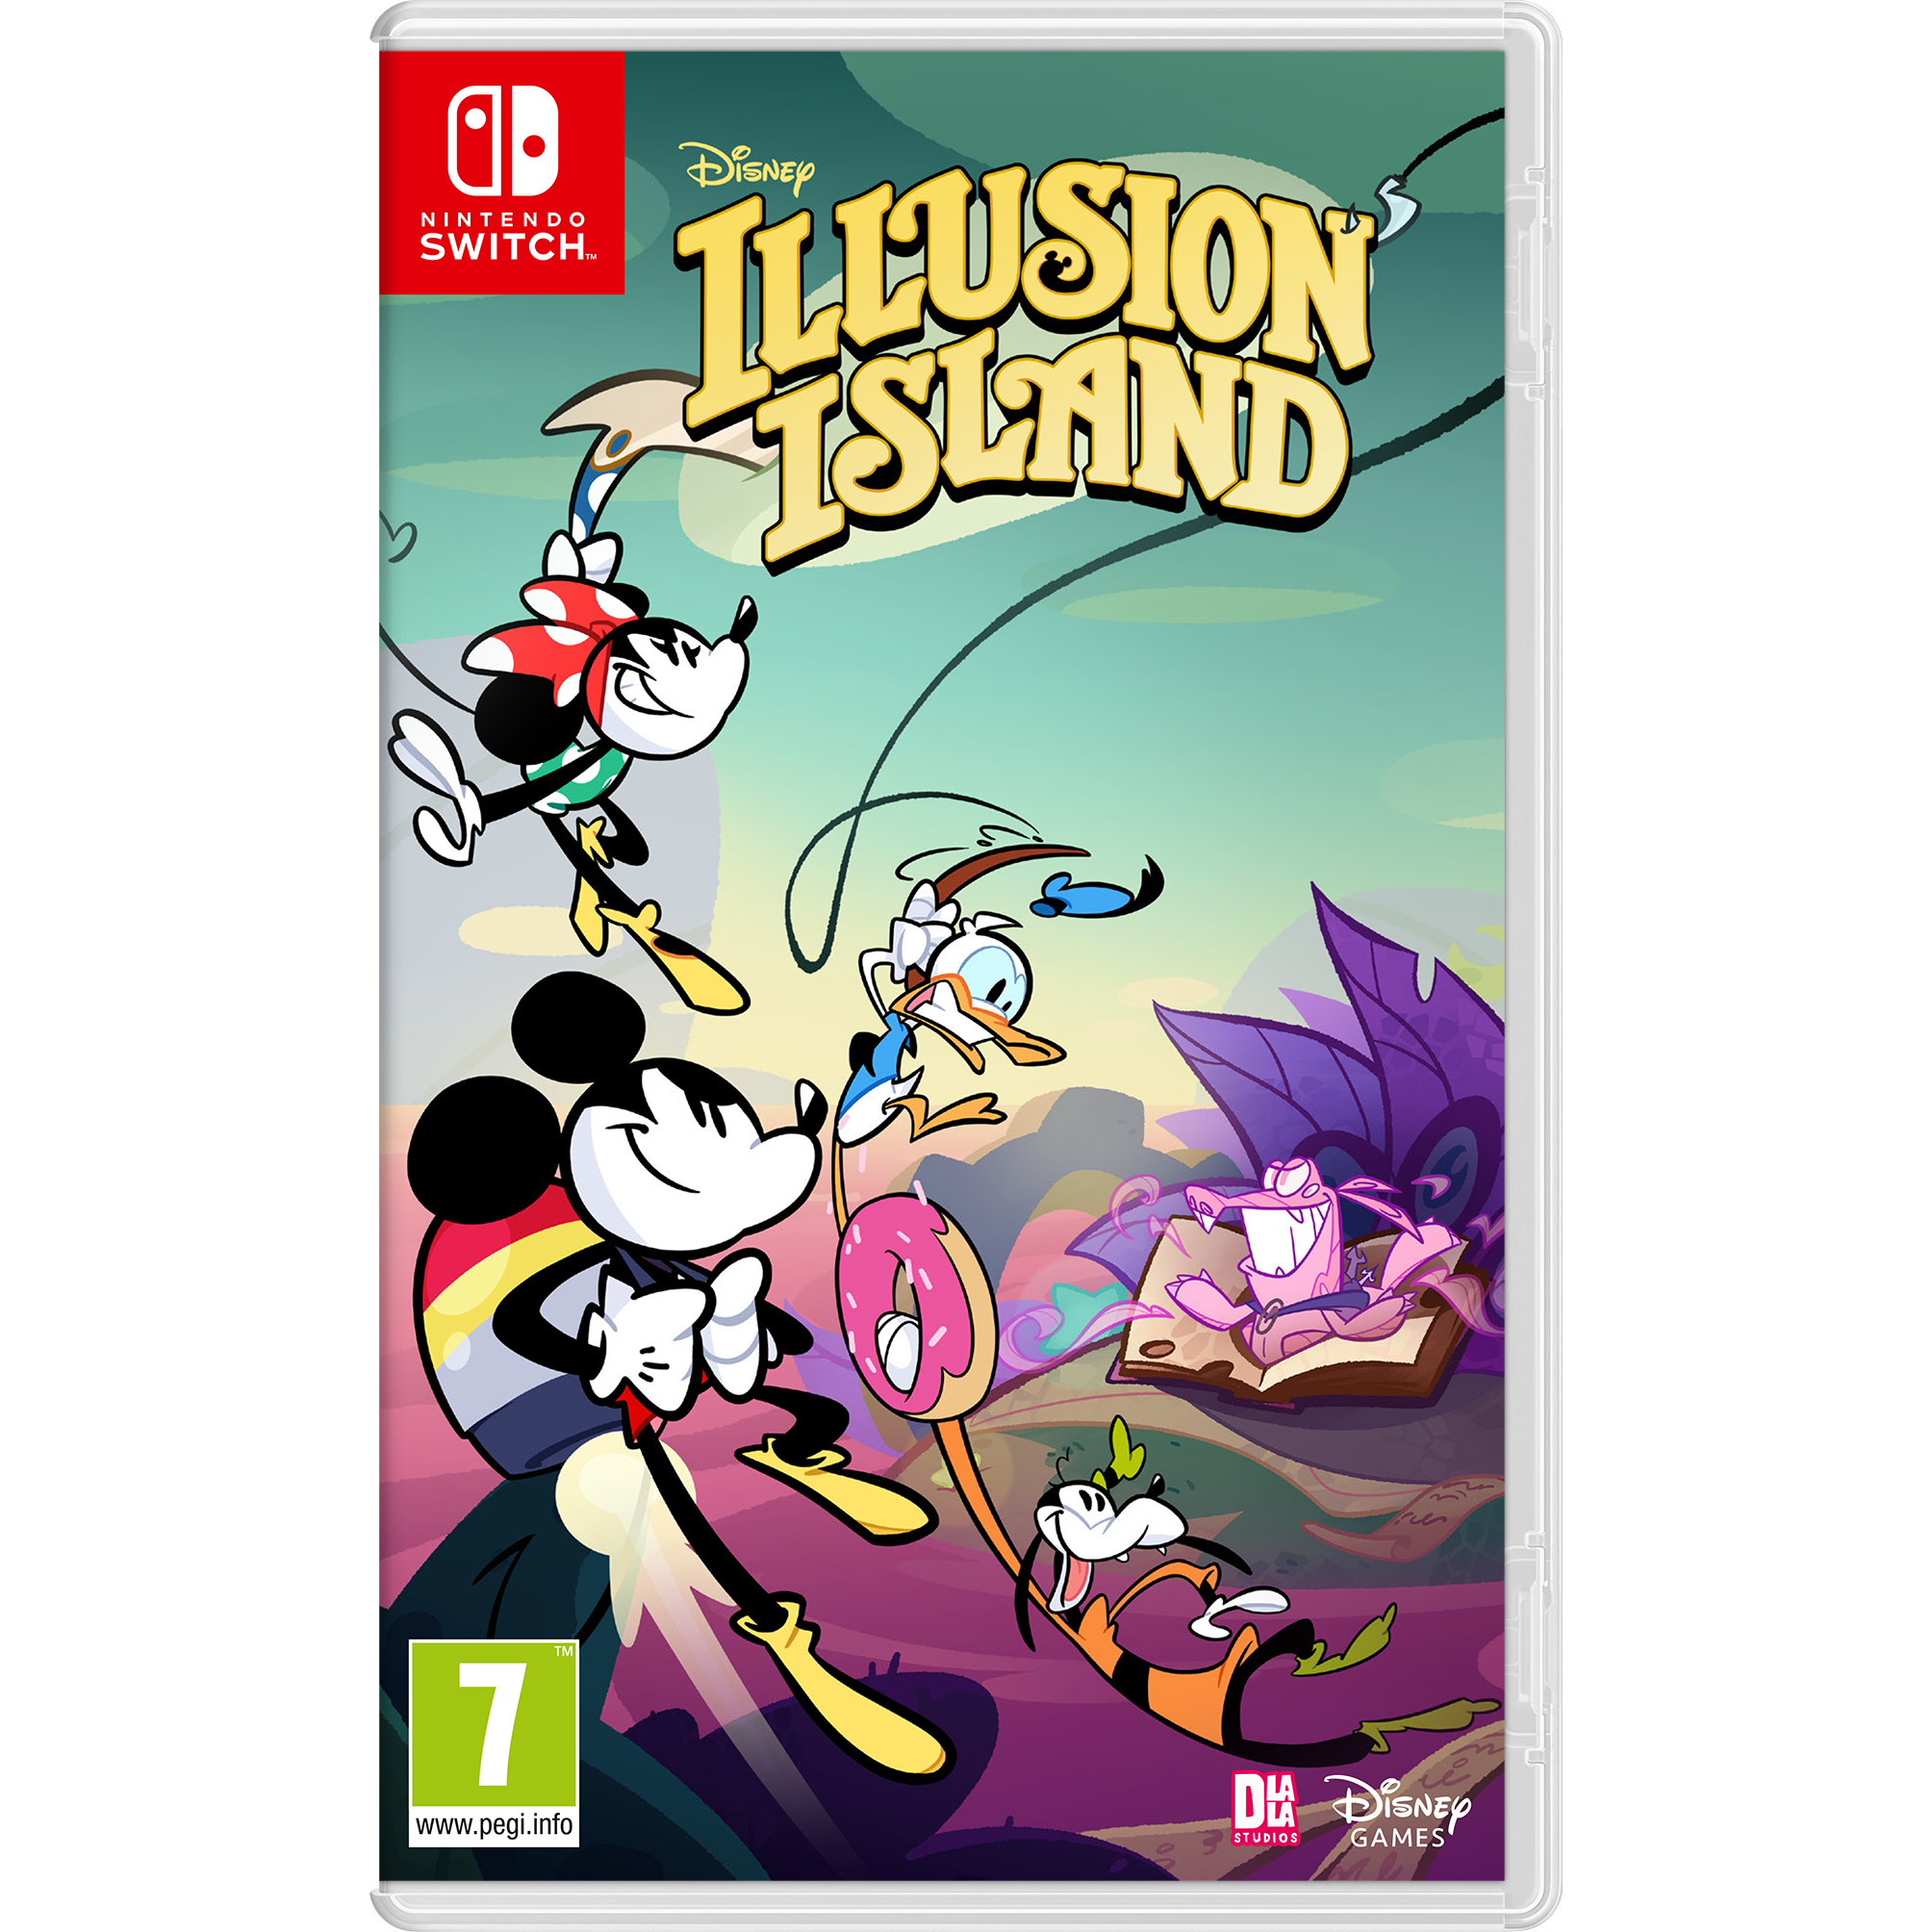 משחק Disney Illusion Island לקונסולת Nintendo Switch